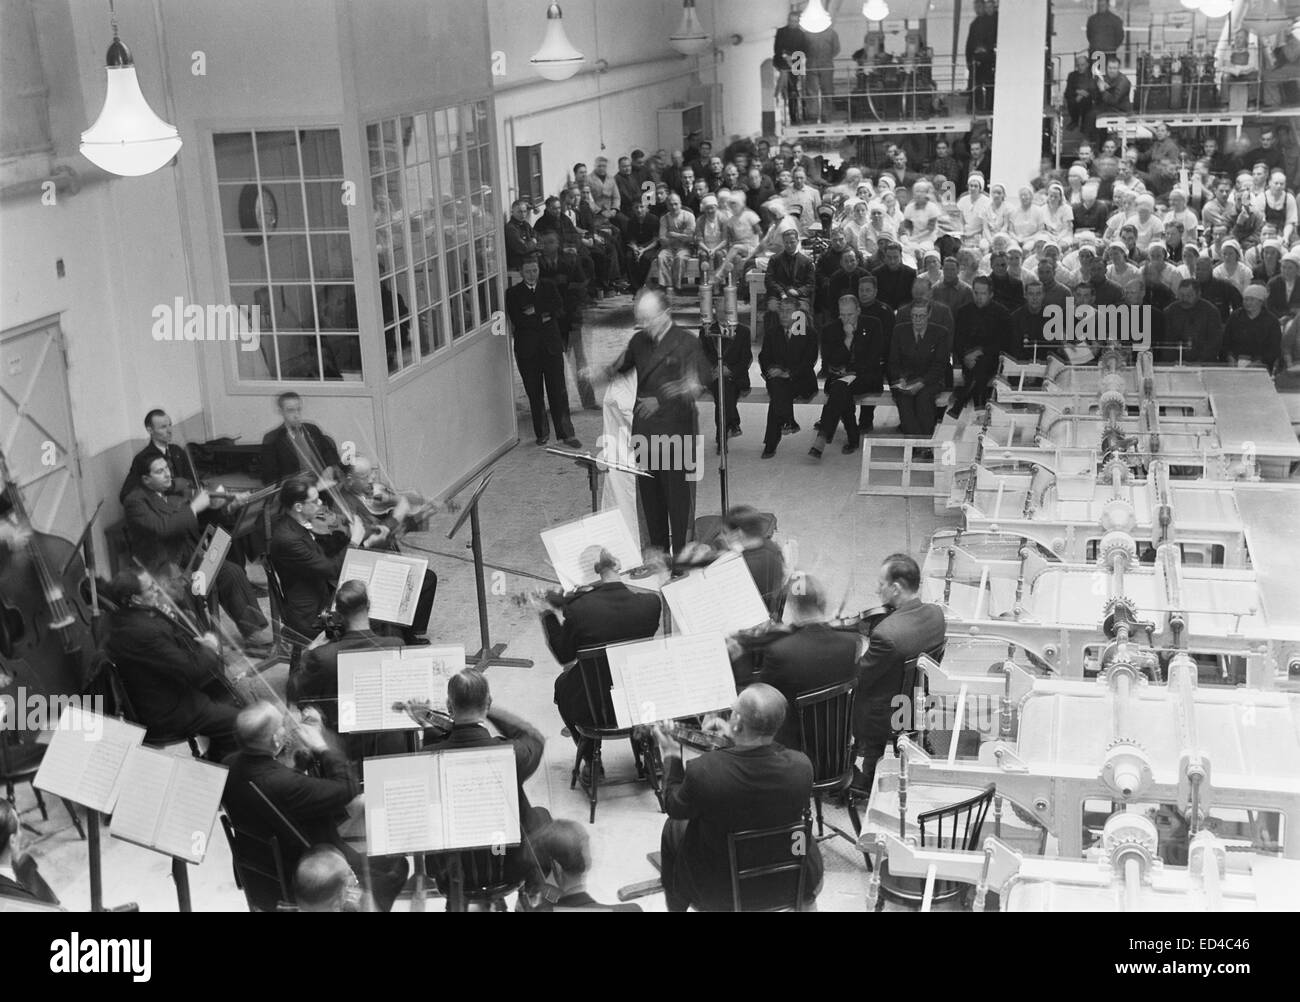 L'Orchestre symphonique de la radio finlandaise jouant dans une sucrerie, Helsinki, 1944, Töölö. Banque D'Images